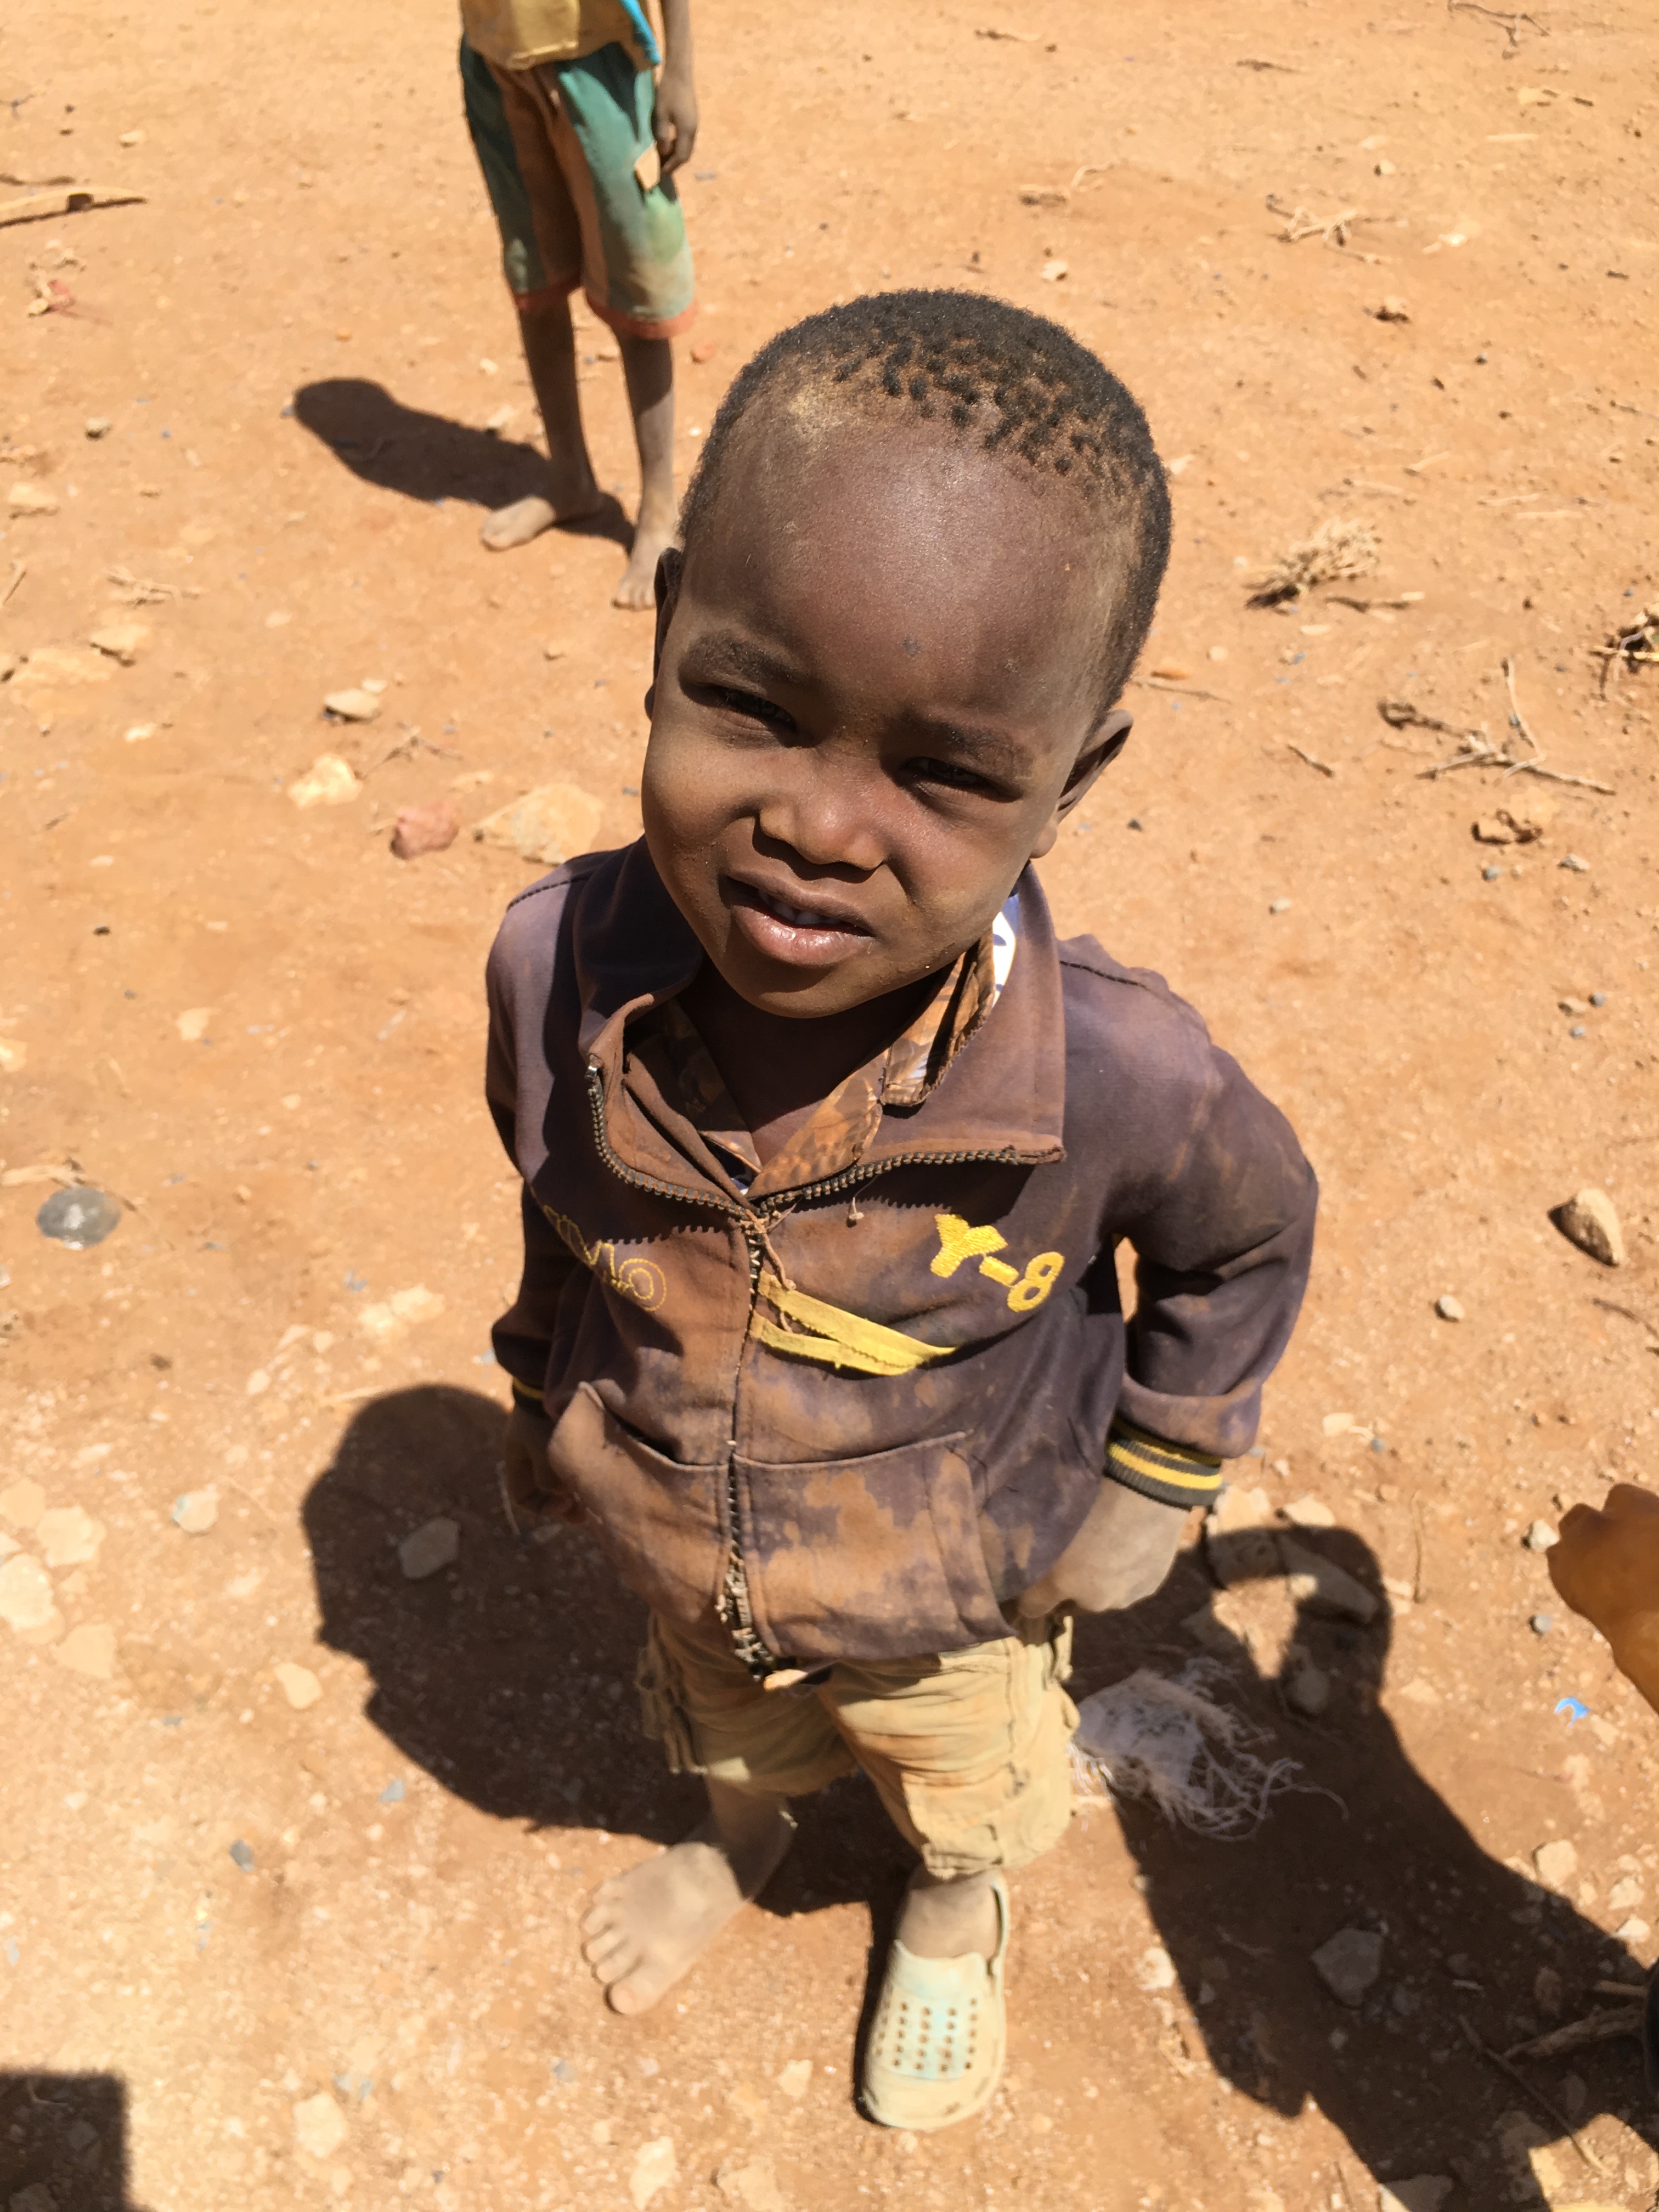 Refugee child in Africa